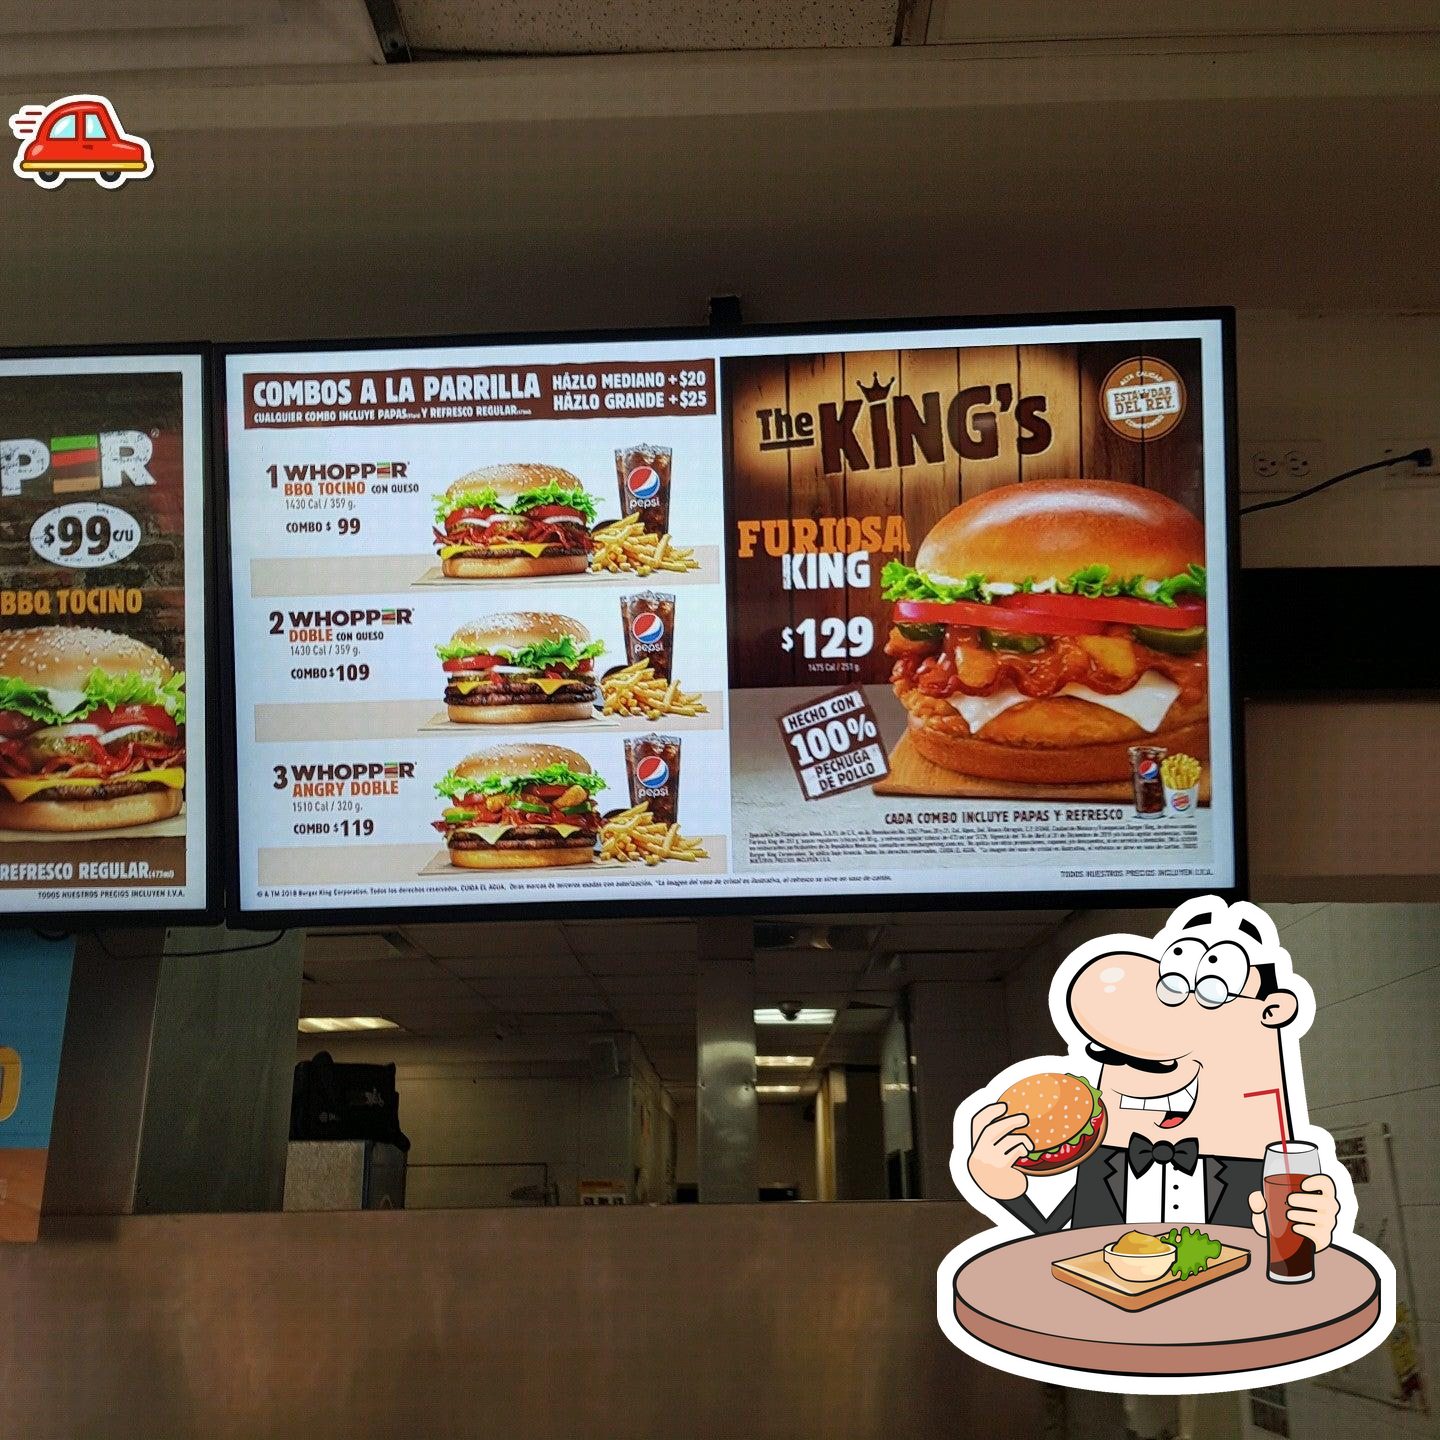 Burger King Eduardo Molina Restaurant Mexico City Av Ing Eduardo Molina 1623 Restaurant Menu And Reviews